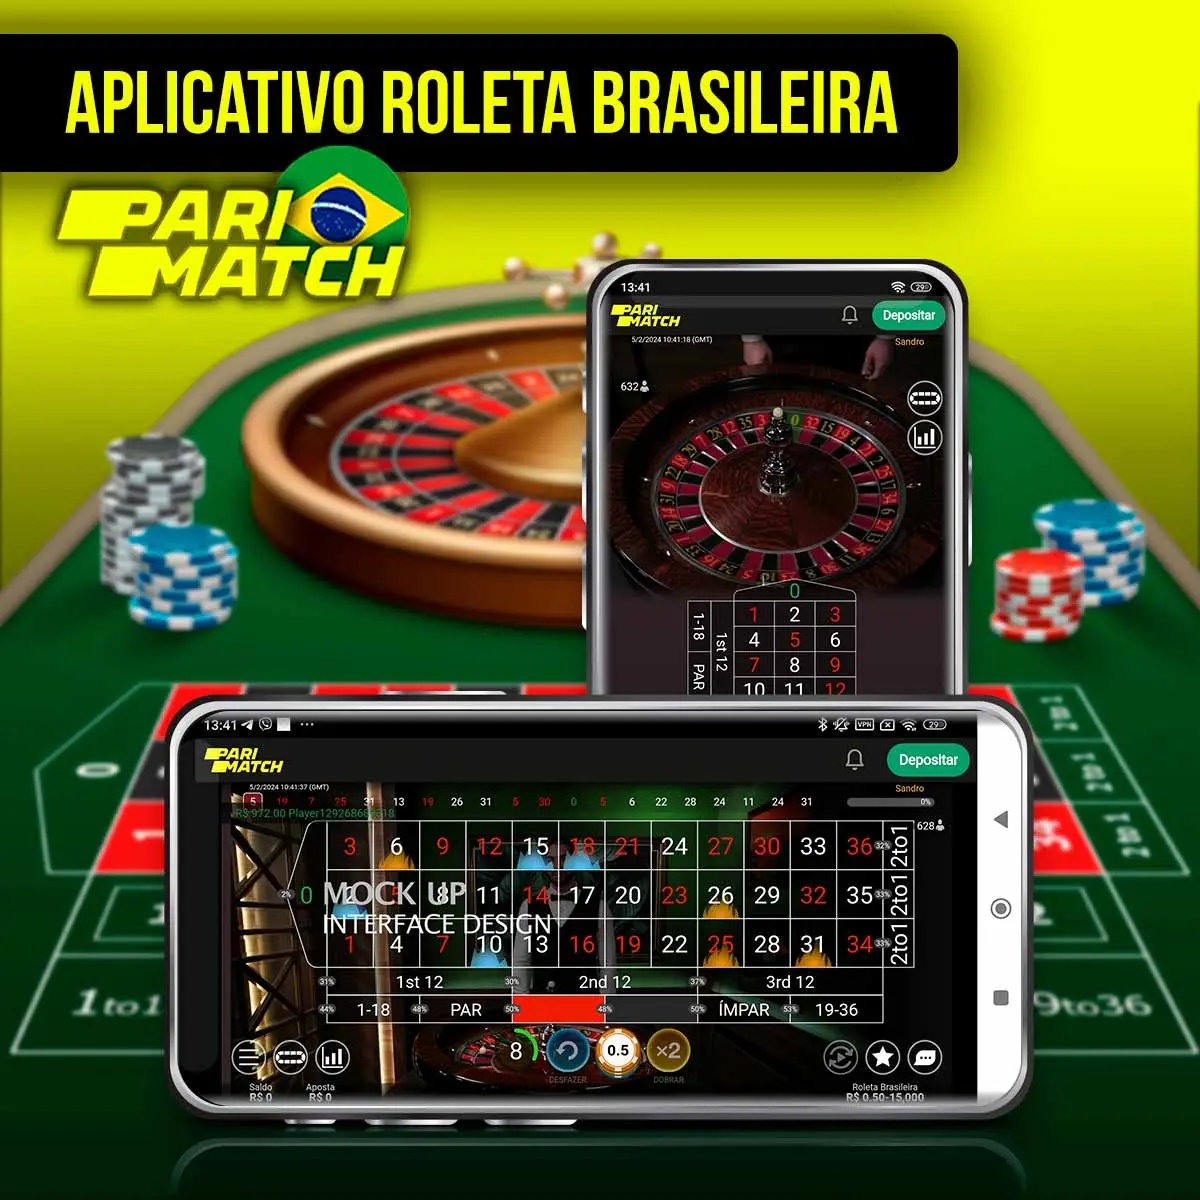 Aplicativo da Parimatch para jogar Roleta Brasileira